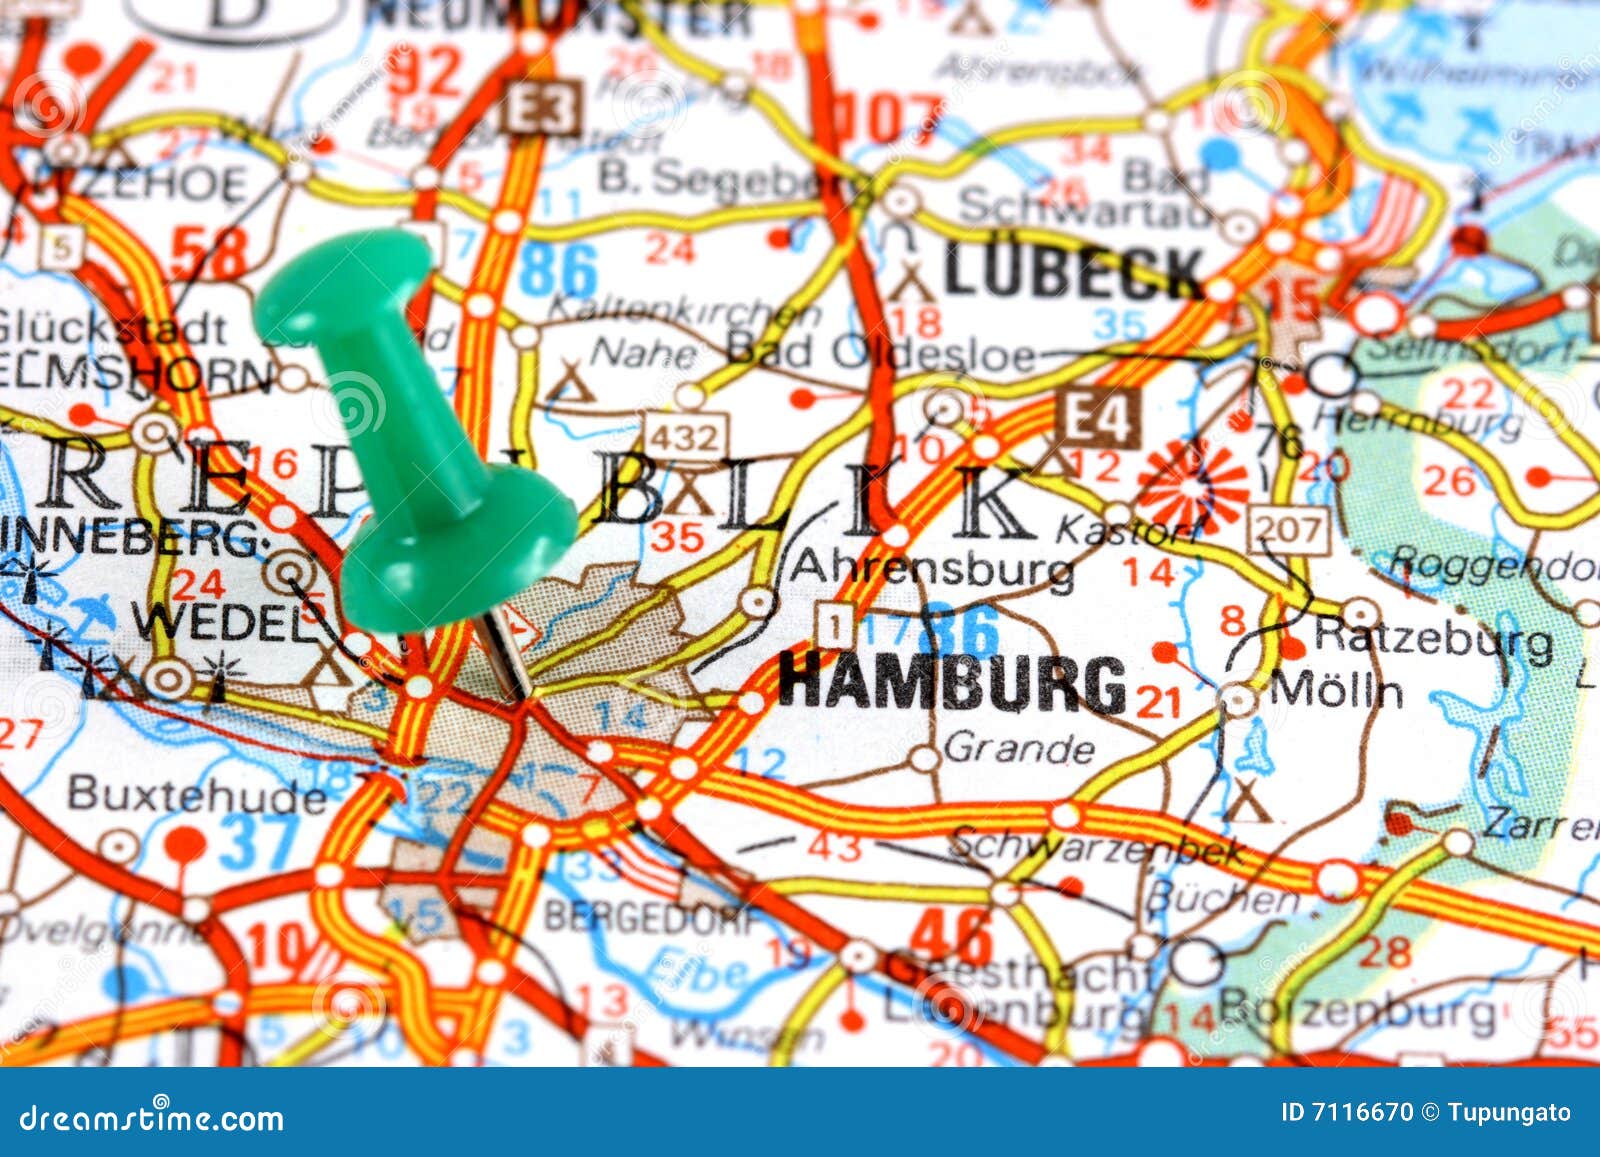 Hamburg On Map Stock Photo - Image: 7116670